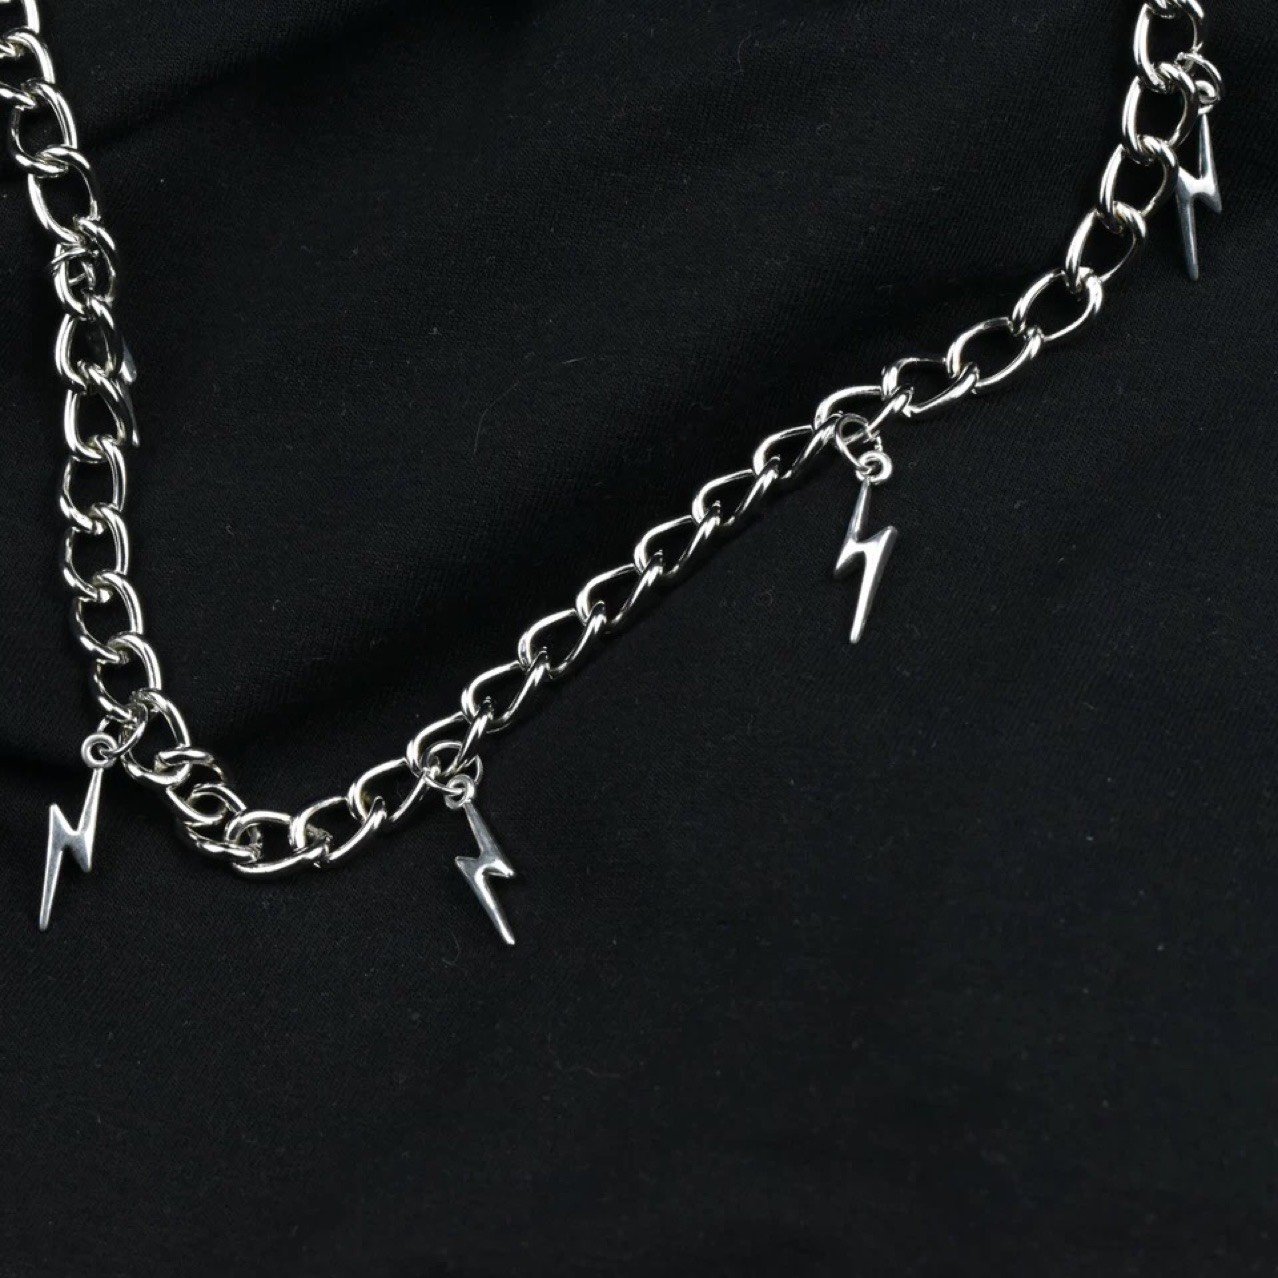 Thunder necklace